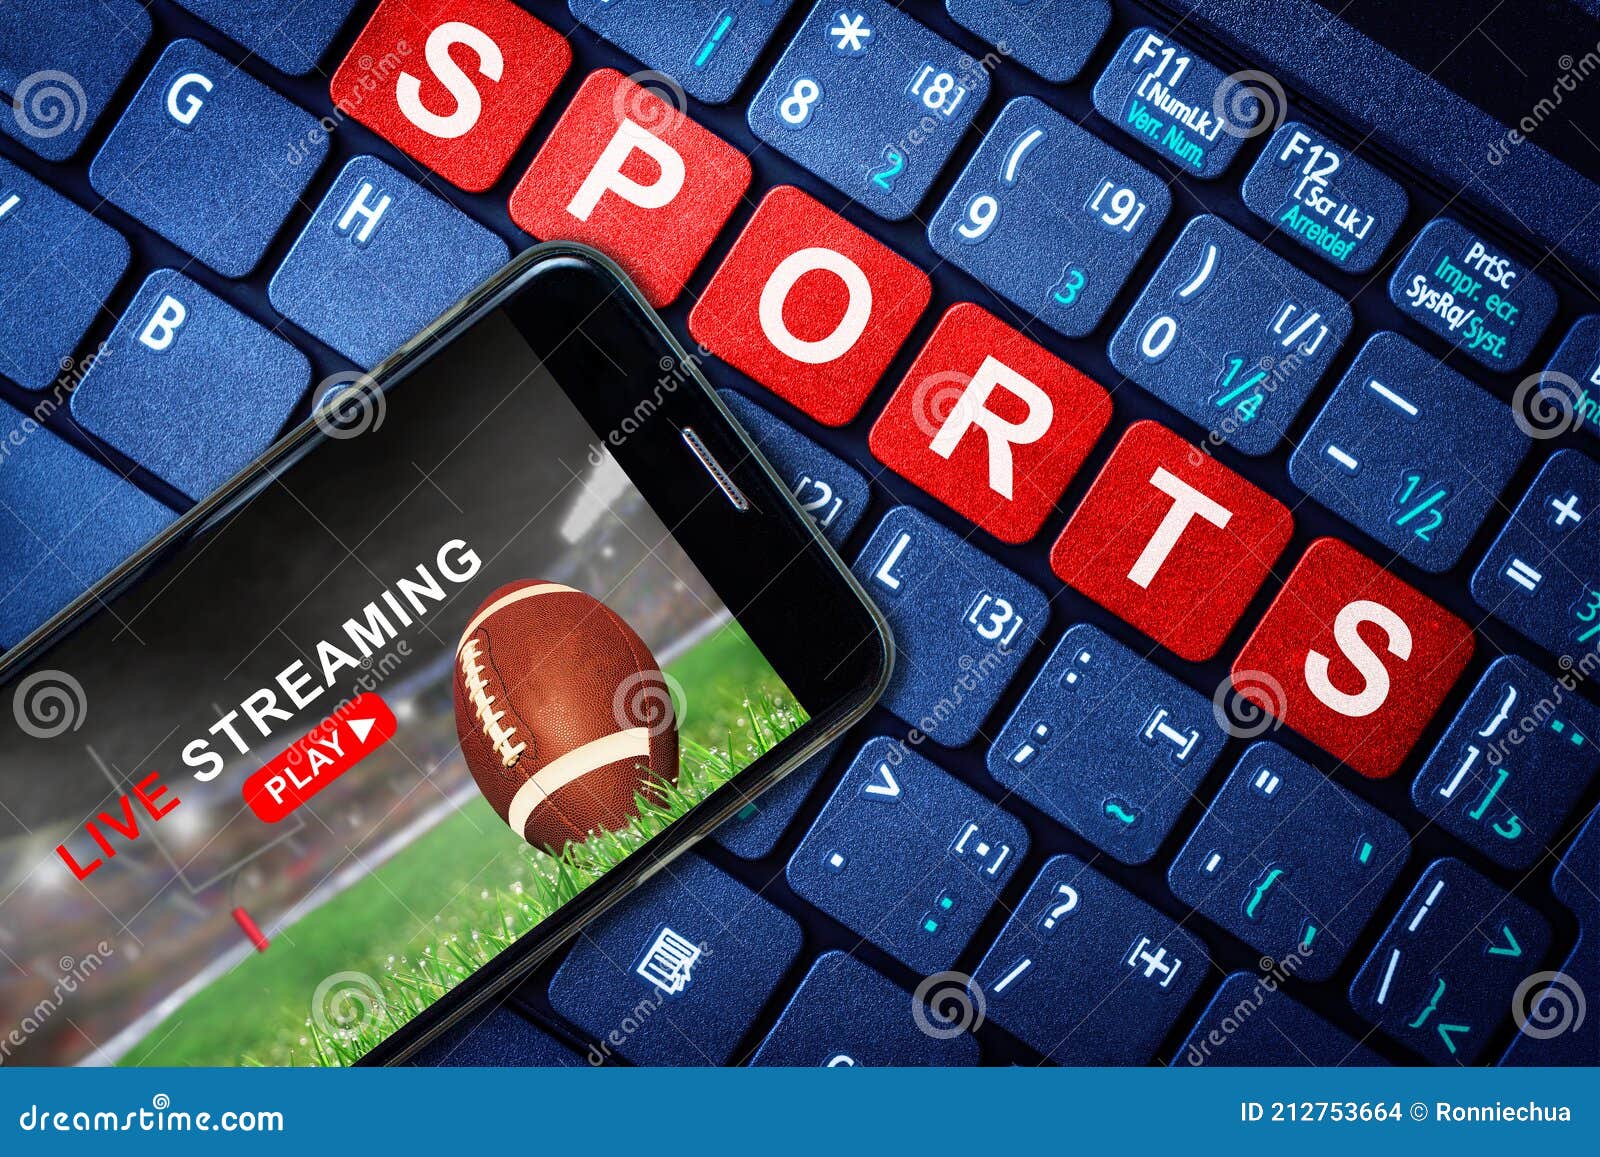 Esportes Ao Vivo Streaming De Jogos De Futebol Por Telefone